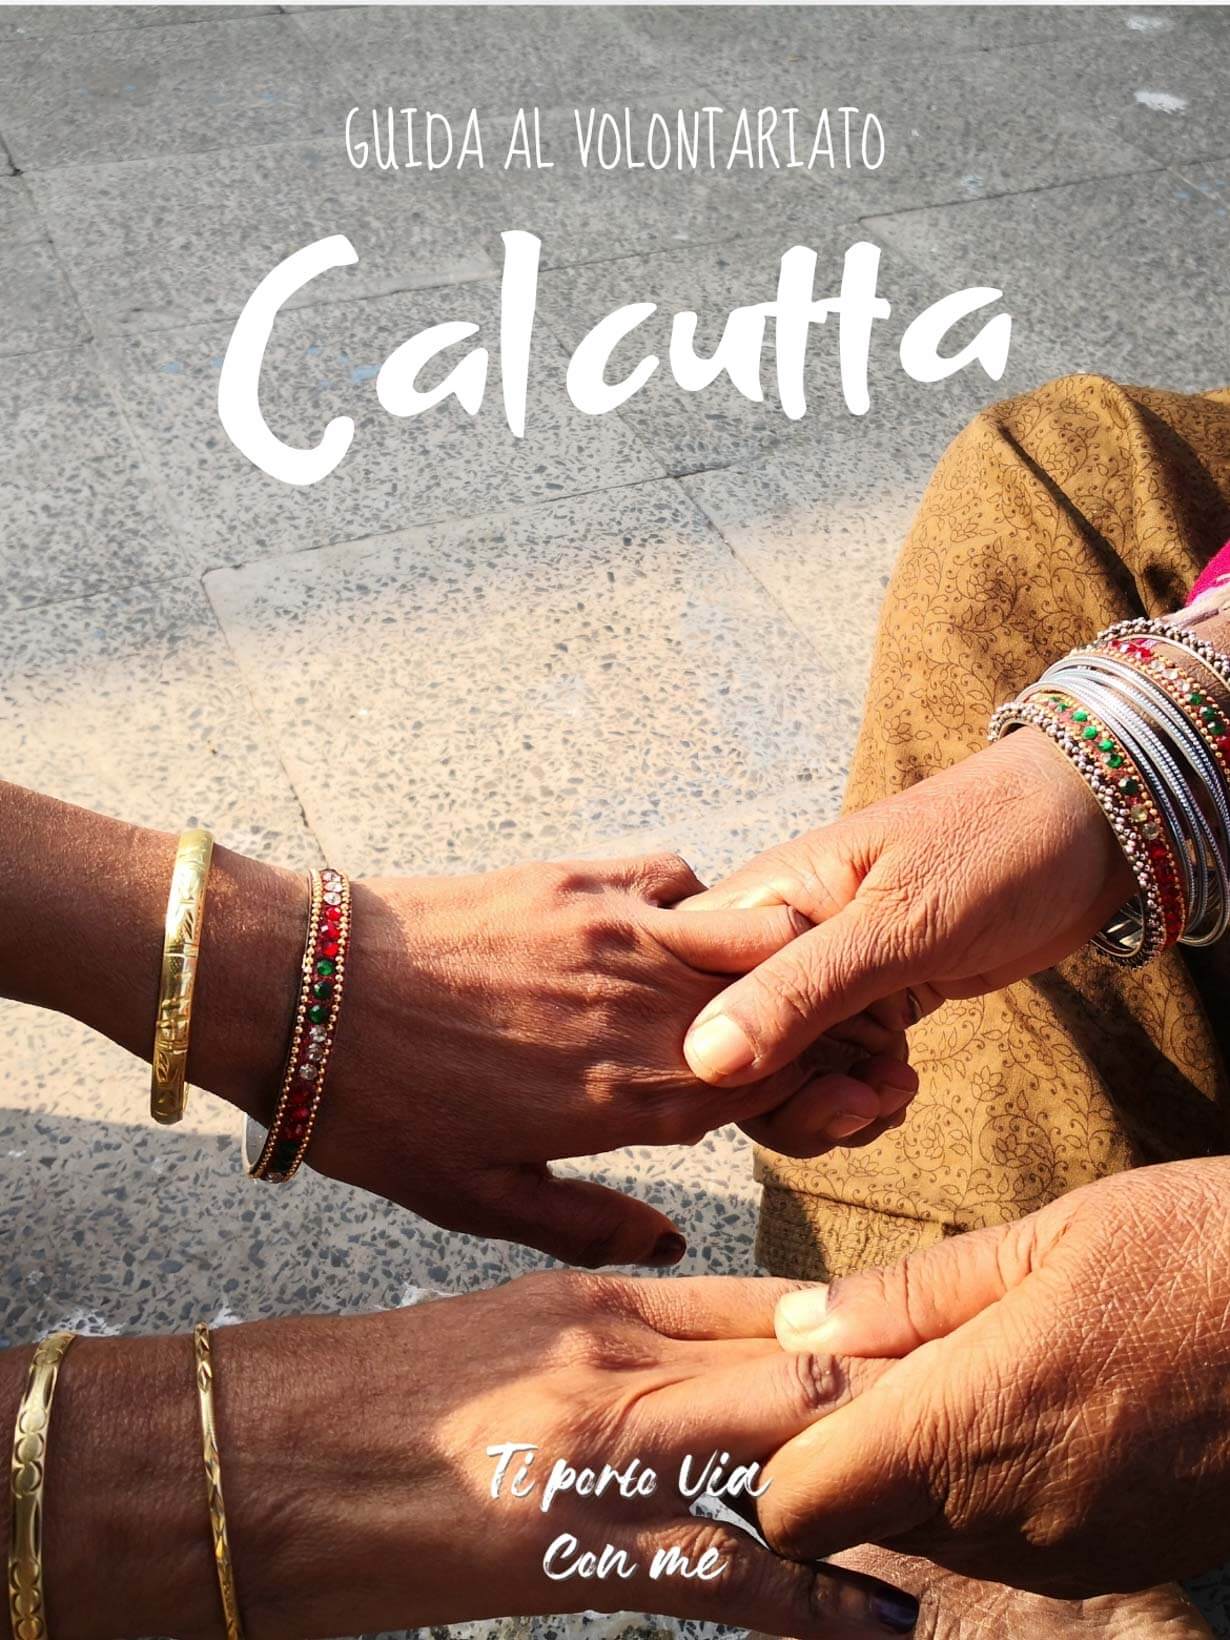 Volontariato a Calcutta dalle Missionarie della Carità Pinterest